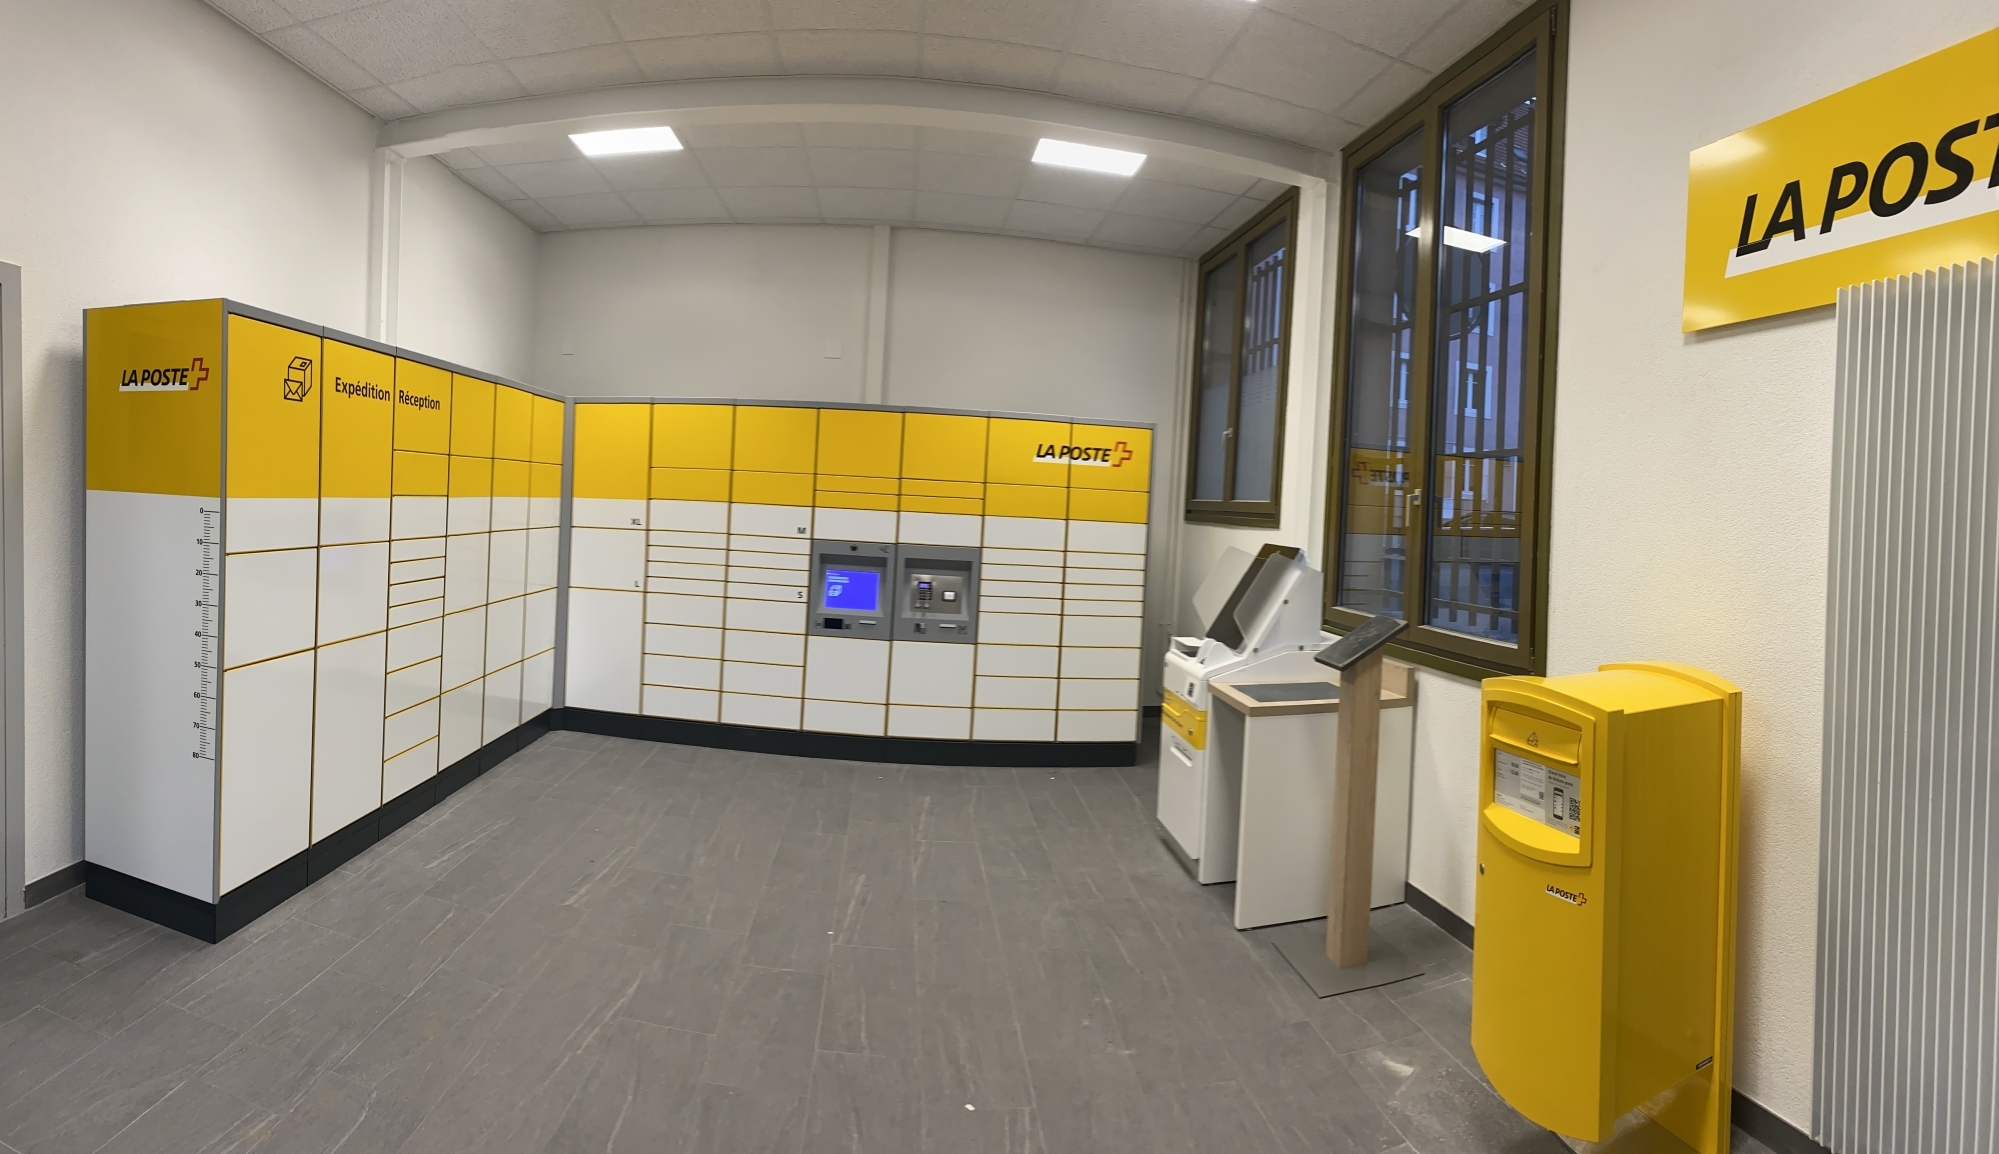 Avec le nouvel automate de La Chaux-de-Fonds, le canton de Neuchâtel dispose désormais de 5 machines intelligentes pour le retrait des colis 24h/24 et 7j/7.